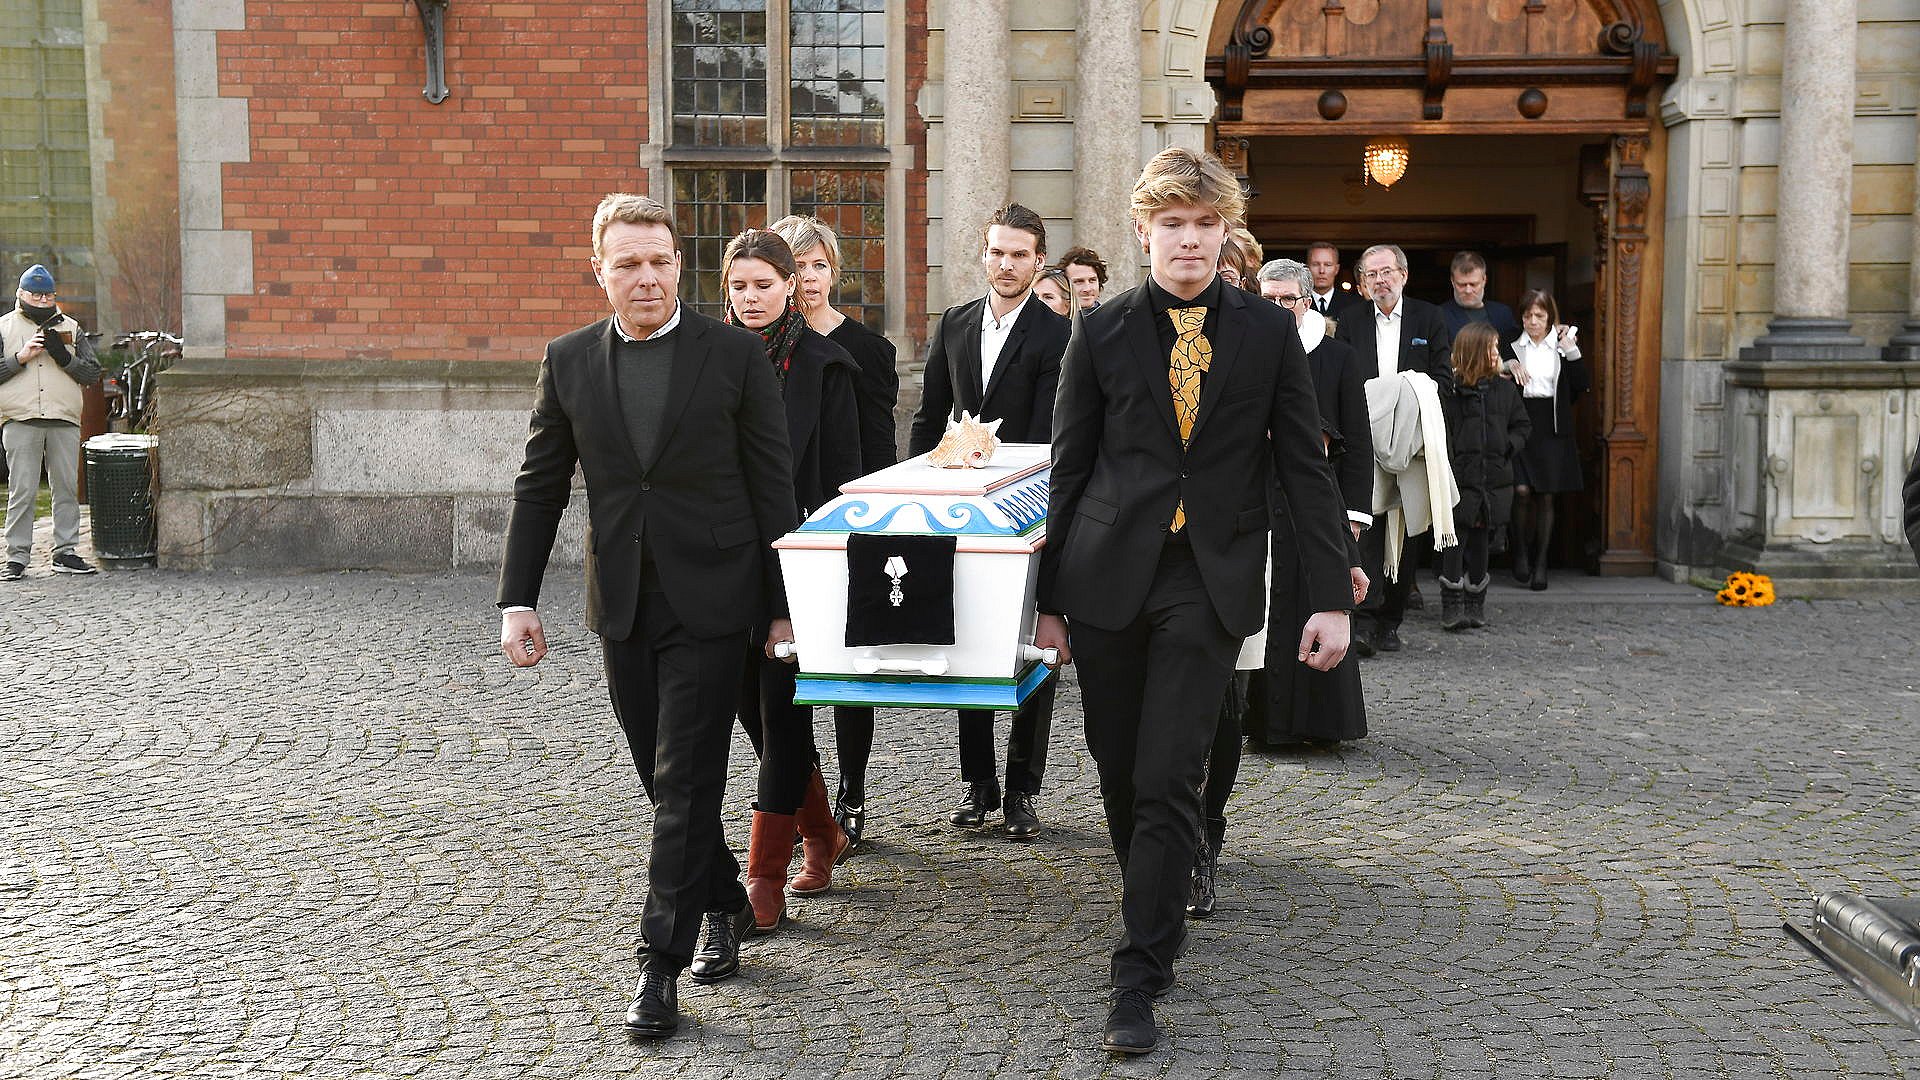 Planlagt Bandit at lege Troels Kløvedal begravet fra Holmens Kirke | TV 2 Lorry